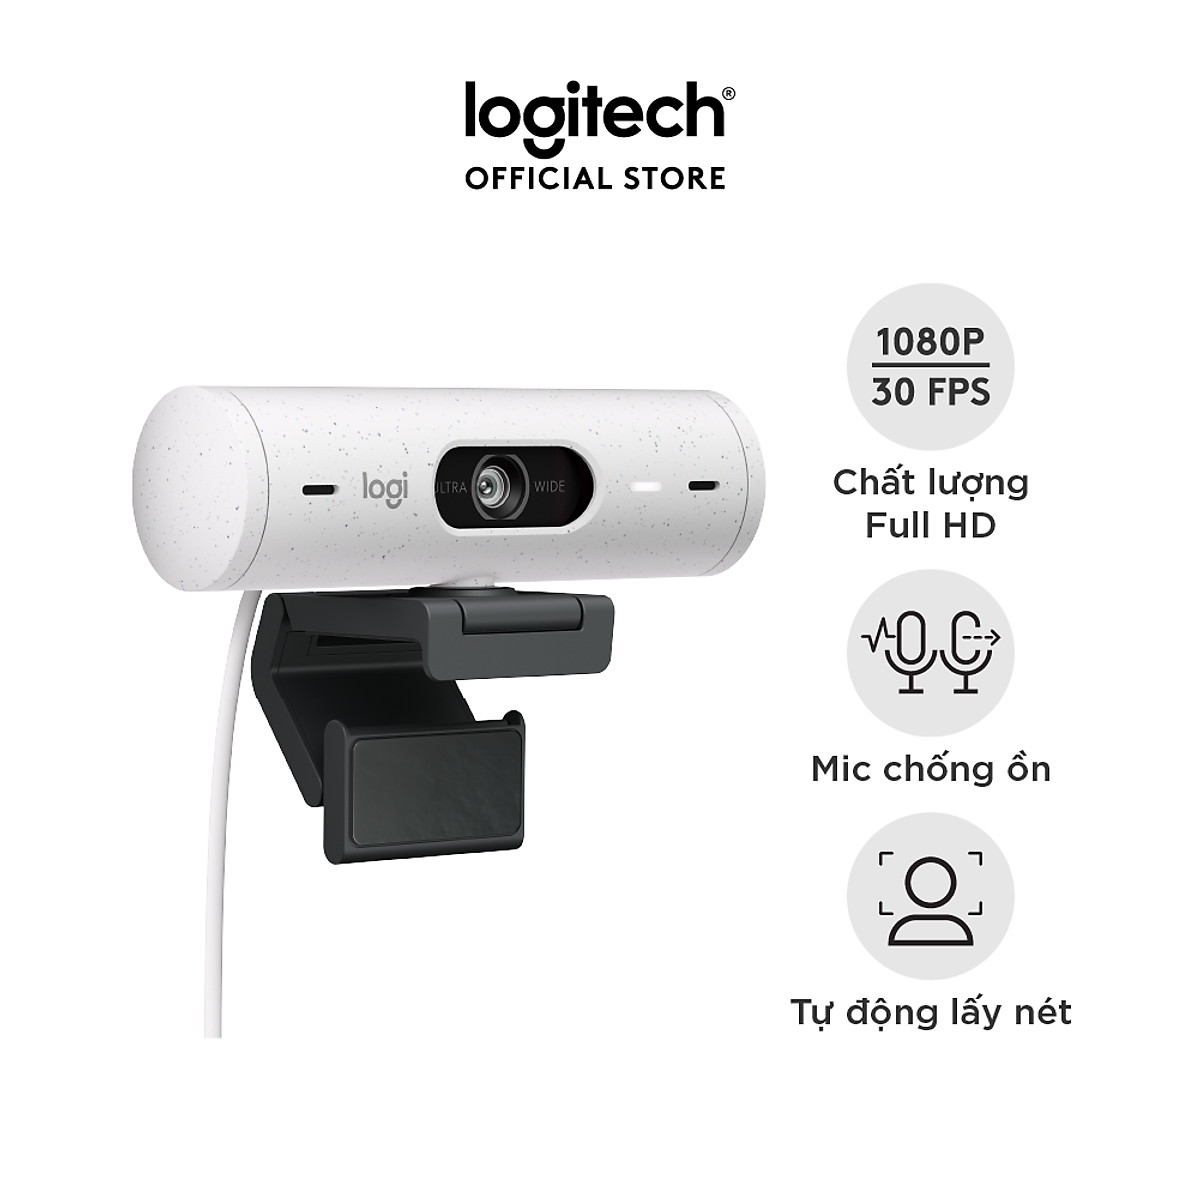 Webcam Logitech Full HD Brio 500 - Tự động điều chỉnh ánh sáng, Tự động lấy khung hình,Show mode, Mic kép giảm ồn, nắp che bảo mật, Hoạt động với Microsoft Teams, Google Meet, Zoom -Hàng chính hãng